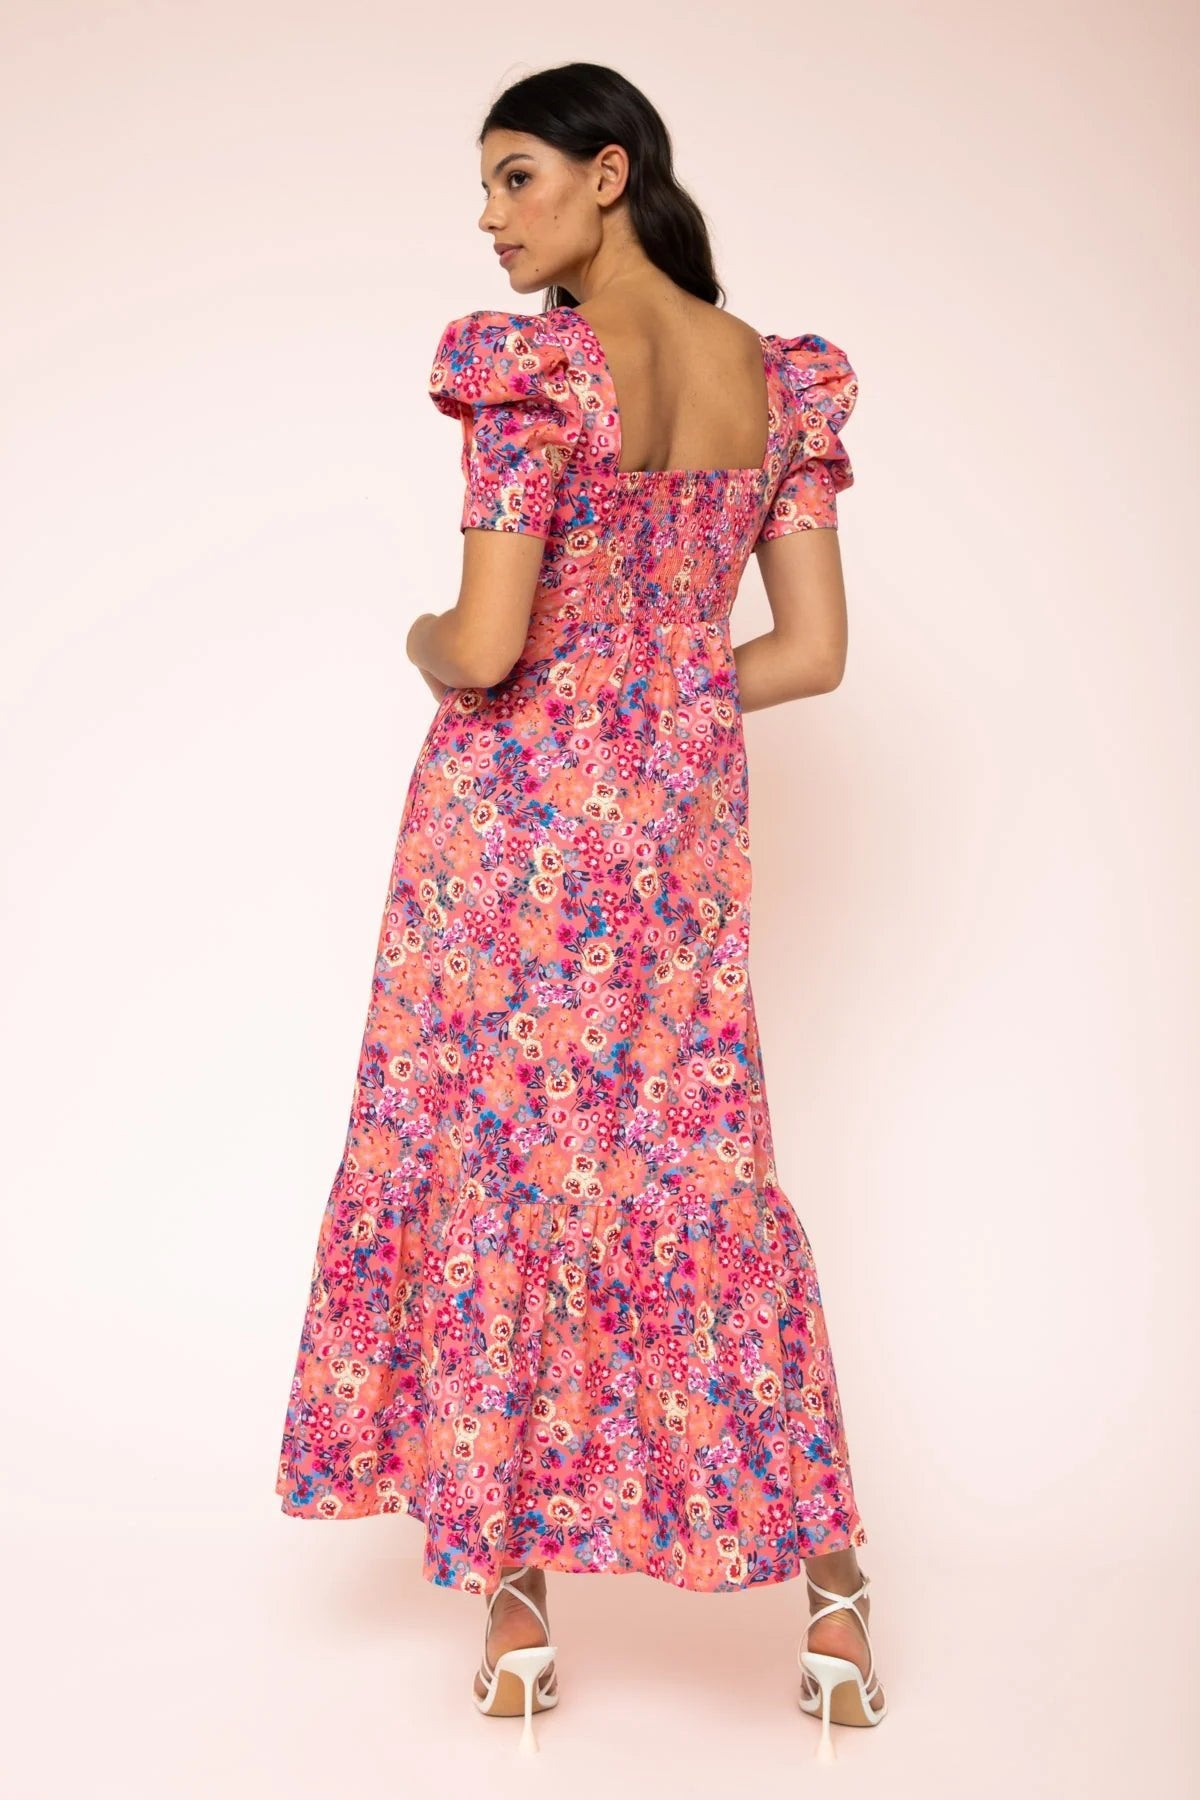 Kachel Renee Puff Sleeve Maxi Dress - Kachel - Pinkhill - darwin fashion - darwin boutique